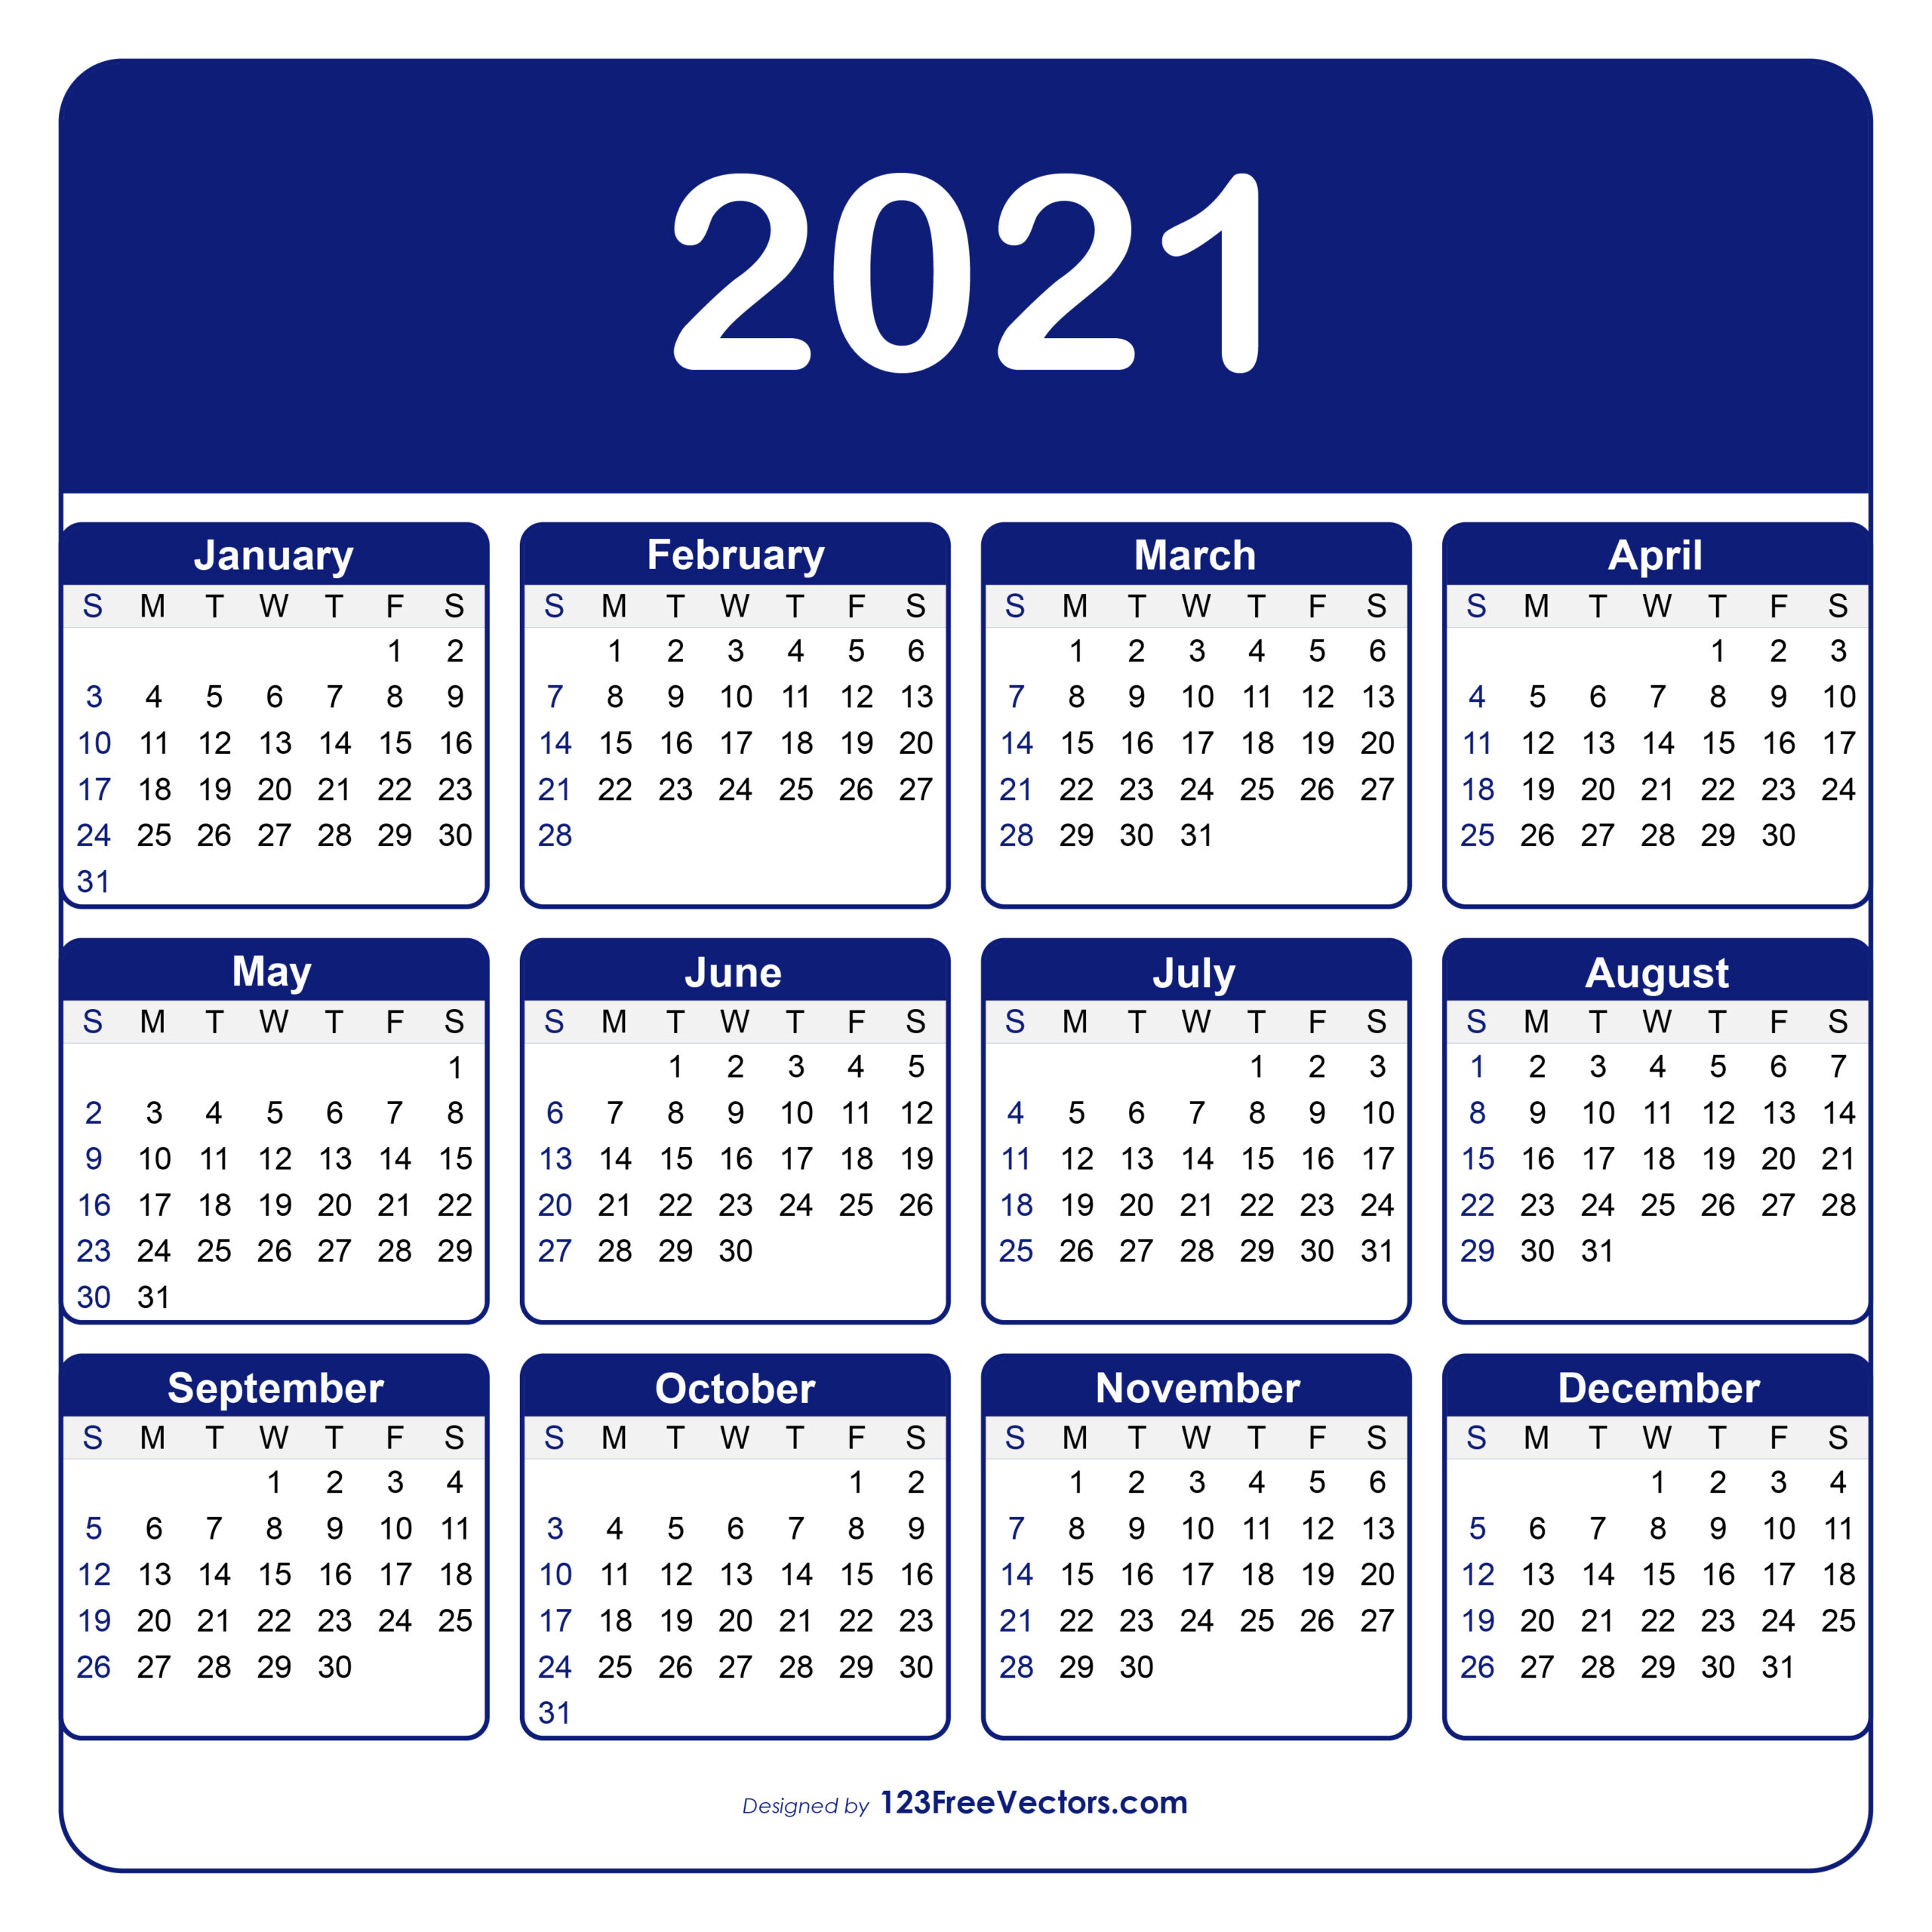 Collect January 2022 Broadcast Calendar